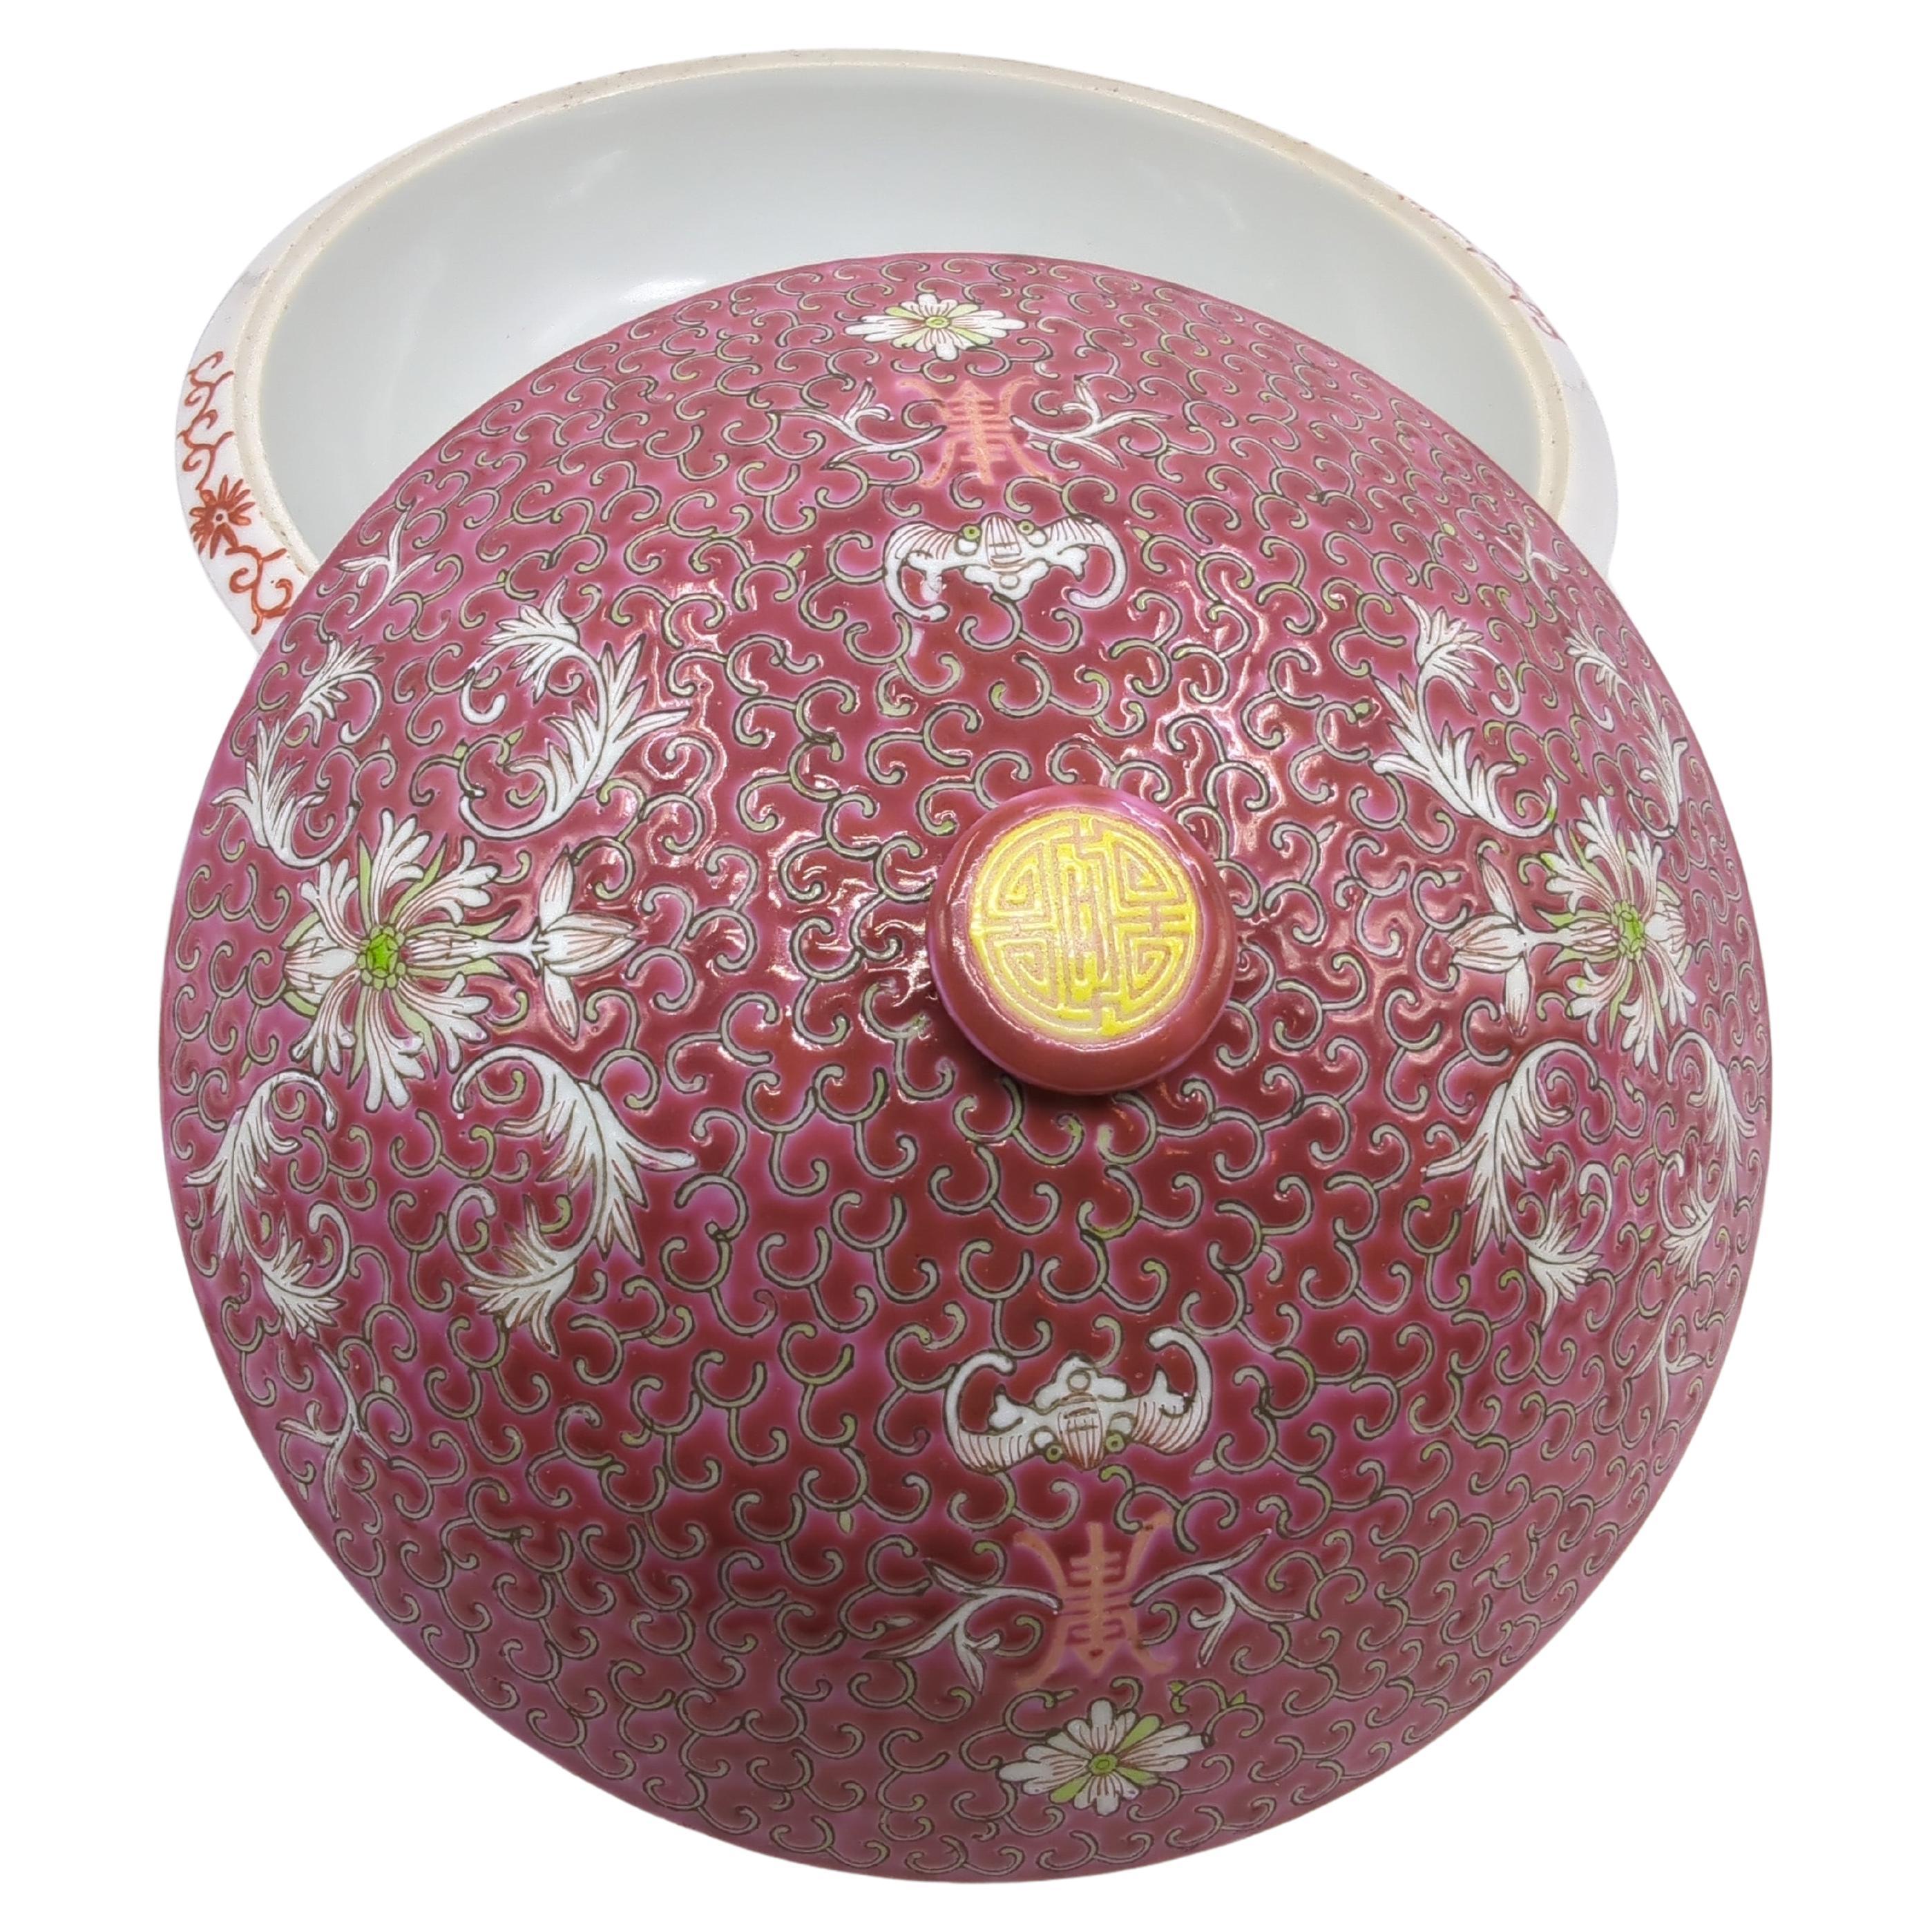 Nous sommes ravis de proposer ce grand bol de service couvert en porcelaine chinoise, un exemple remarquable de l'art de la céramique de la fin du XXe siècle provenant de Jingdezhen, la 